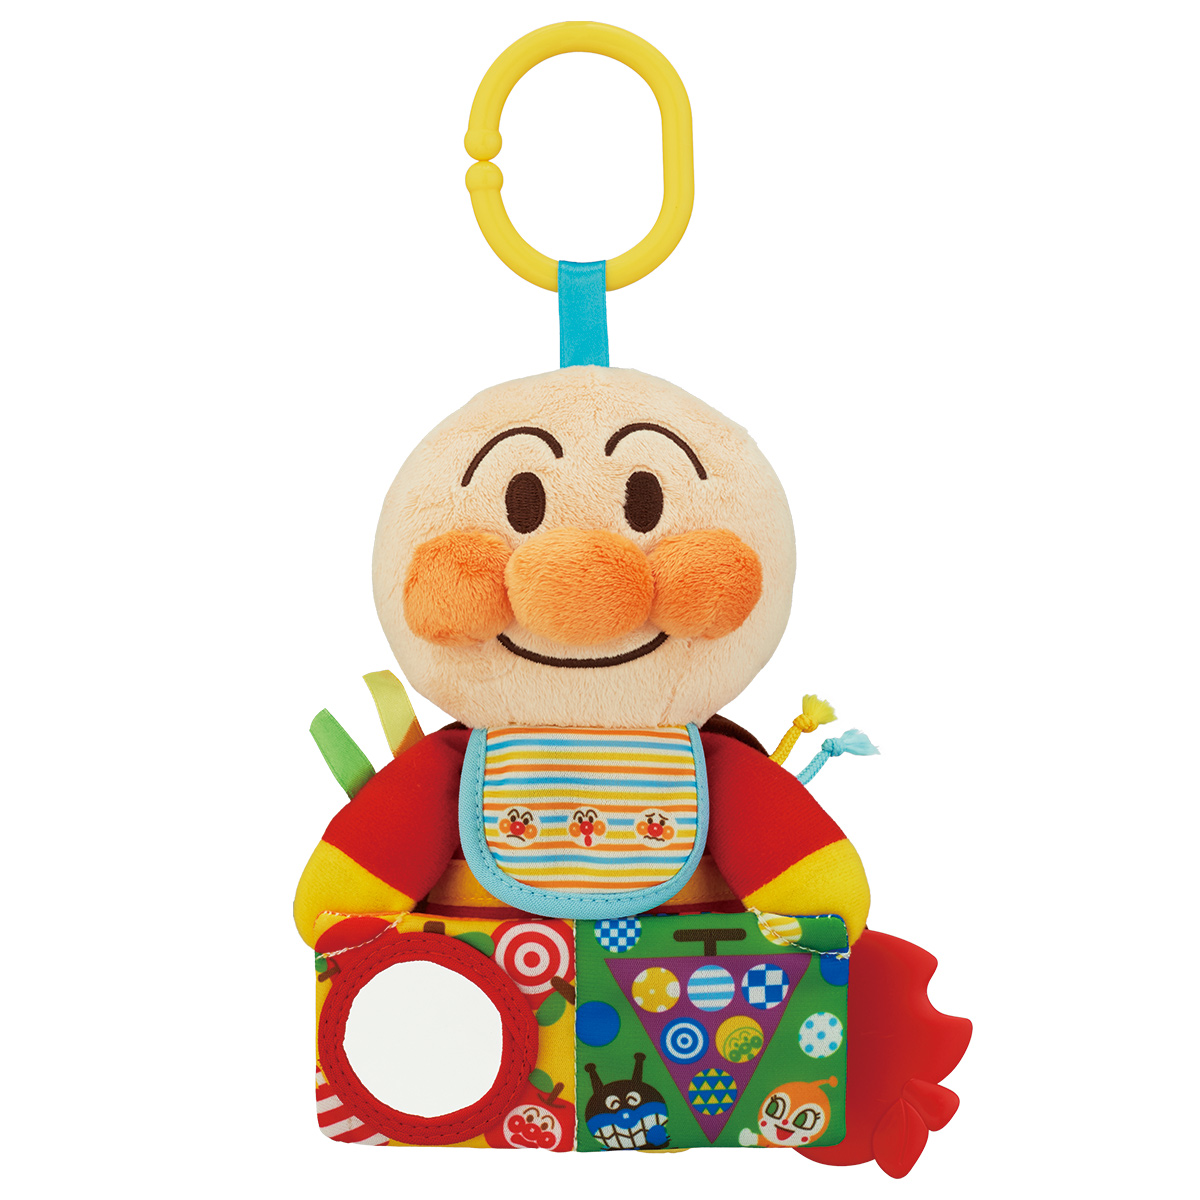 5ヶ月の赤ちゃんへ おすすめプレゼント12選 おもちゃやママも喜ぶ実用品を紹介 シニア向けギフトby Memoco